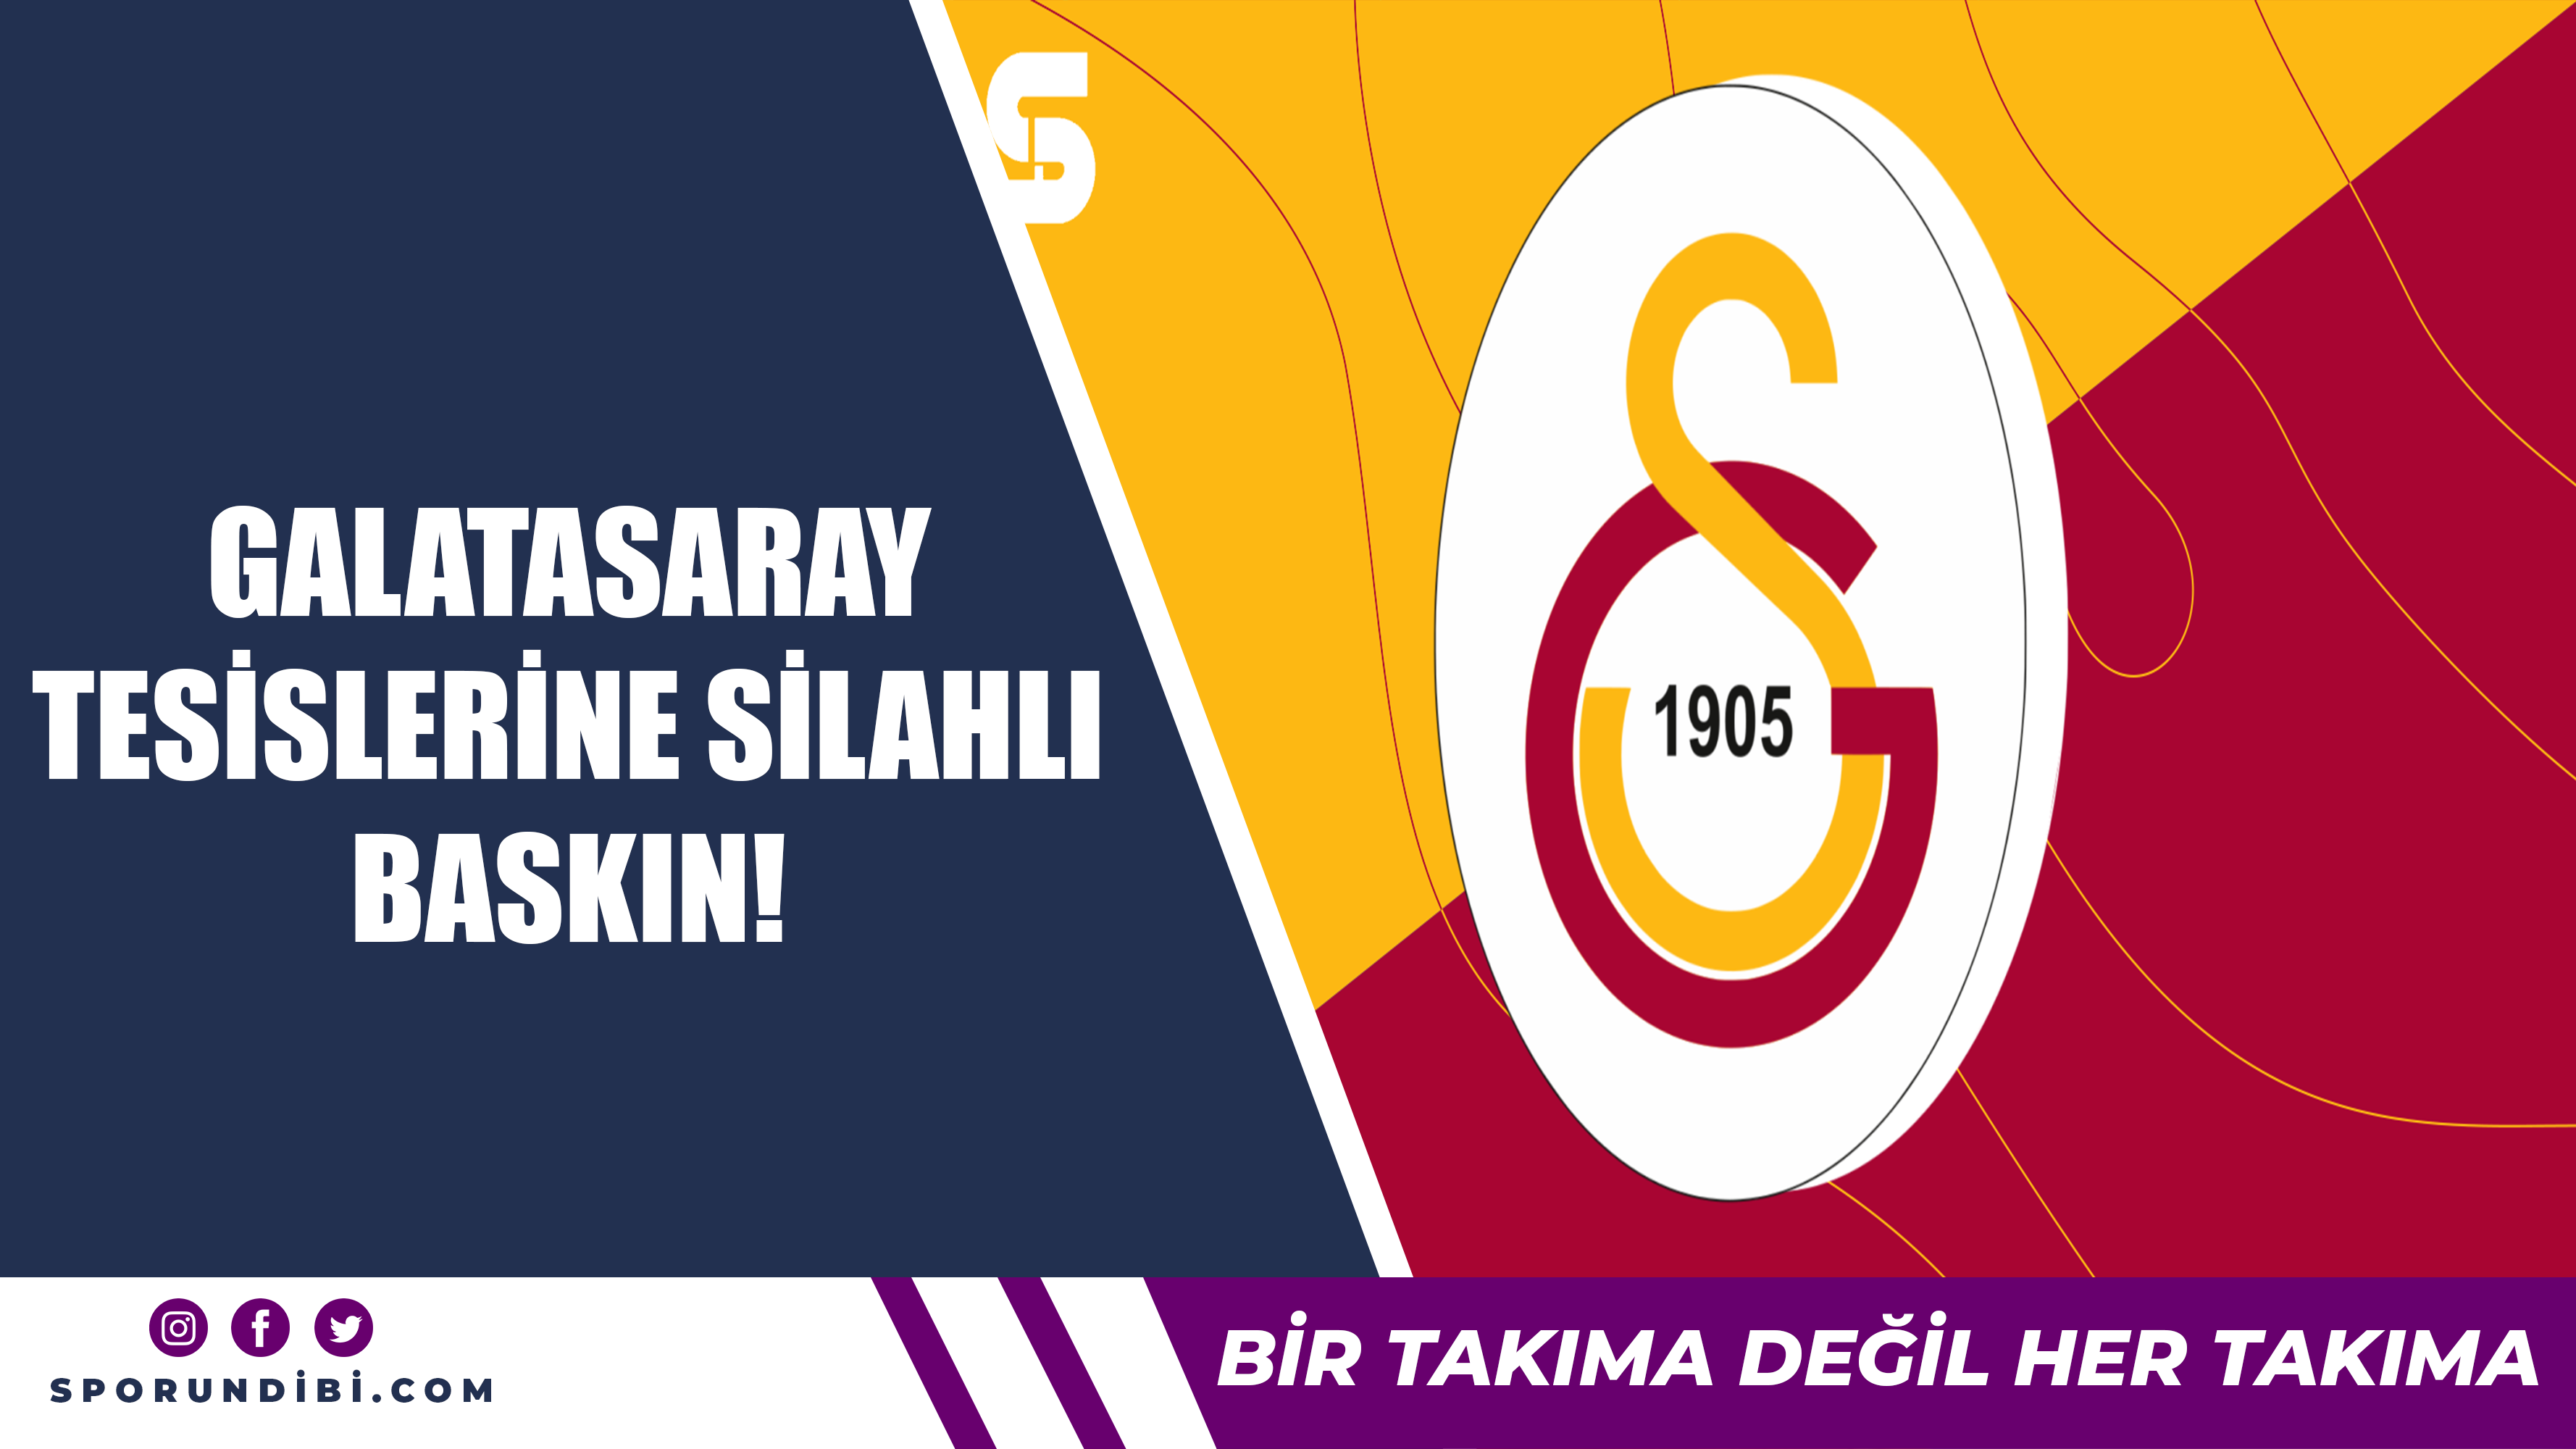 Galatasaray tesislerine silahlı baskın!